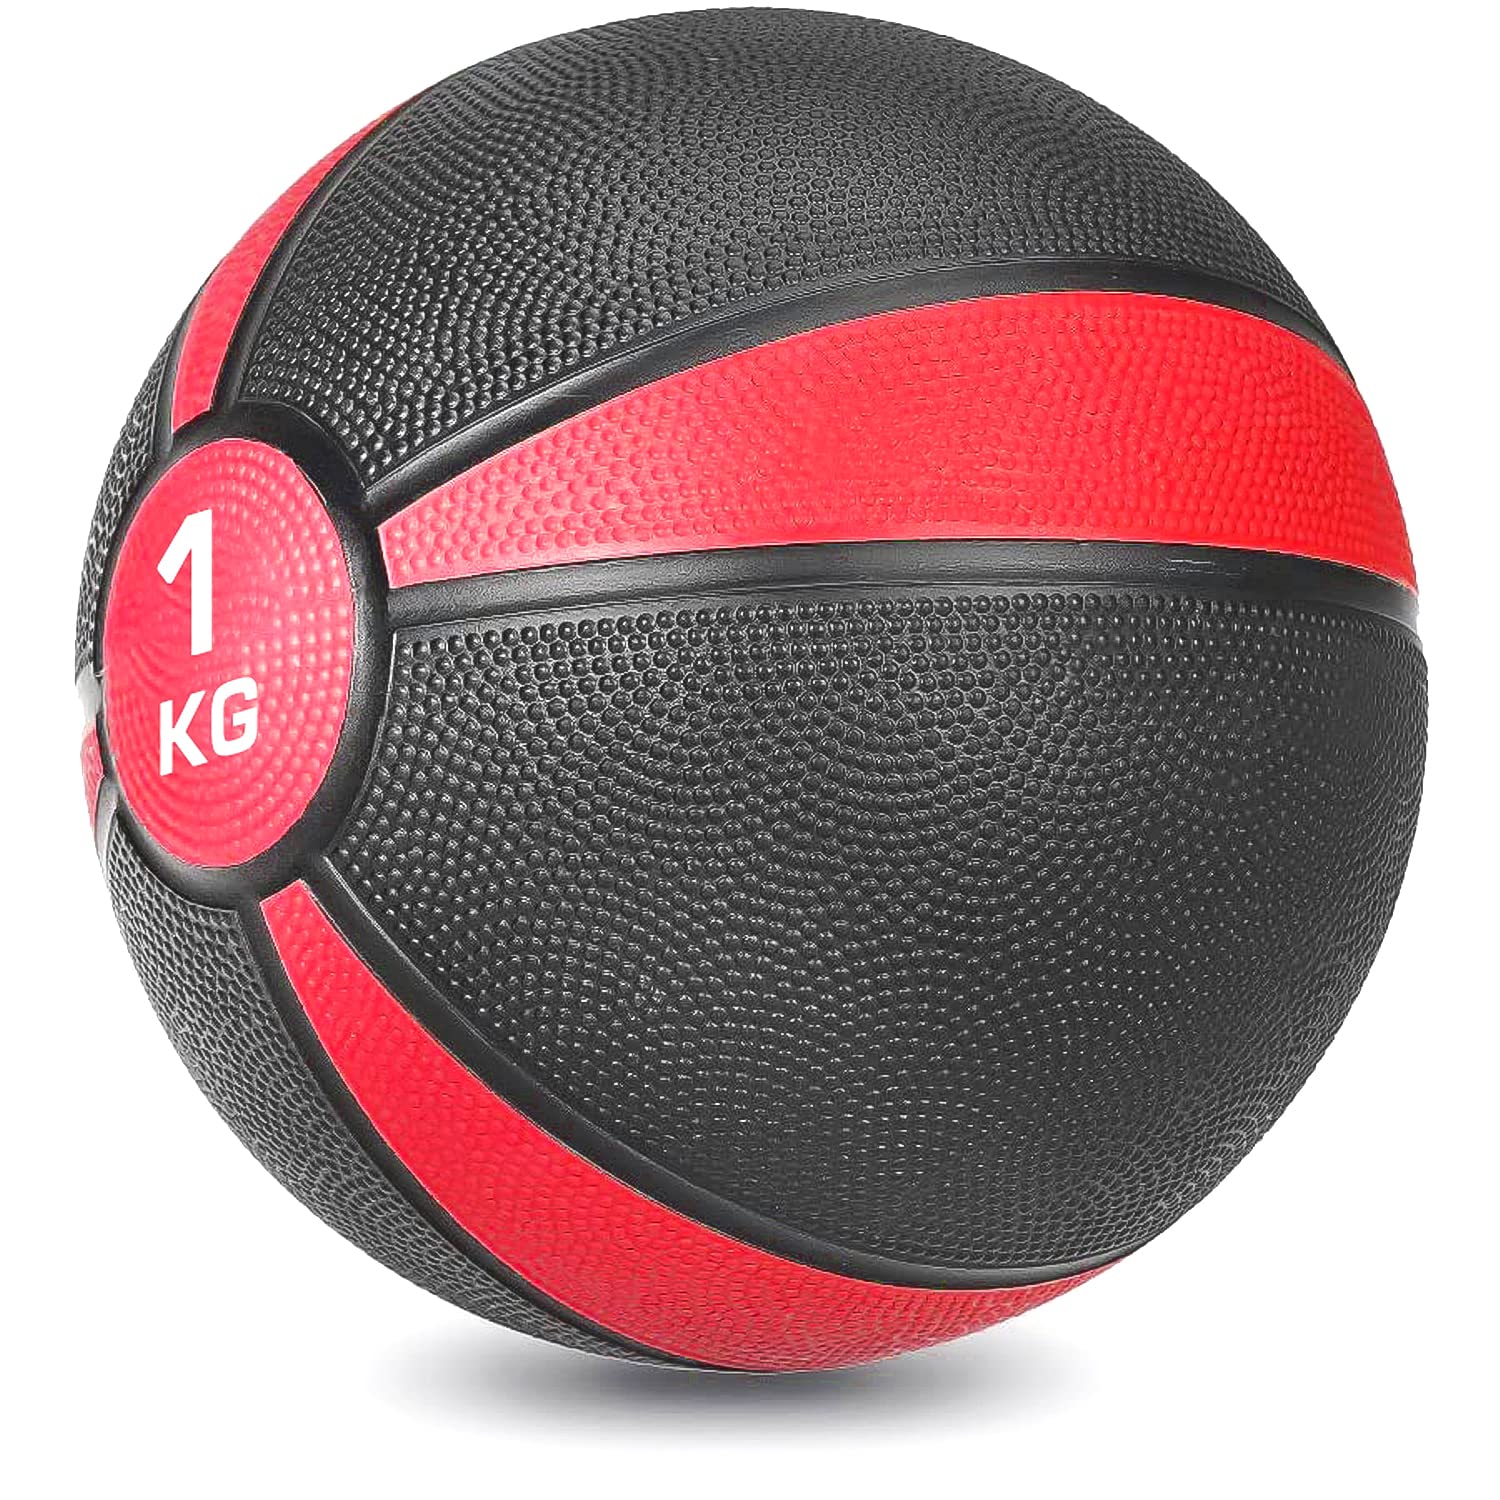 STRAUSS Medicine, Weight Training Ball, 1 Kg, (Red)